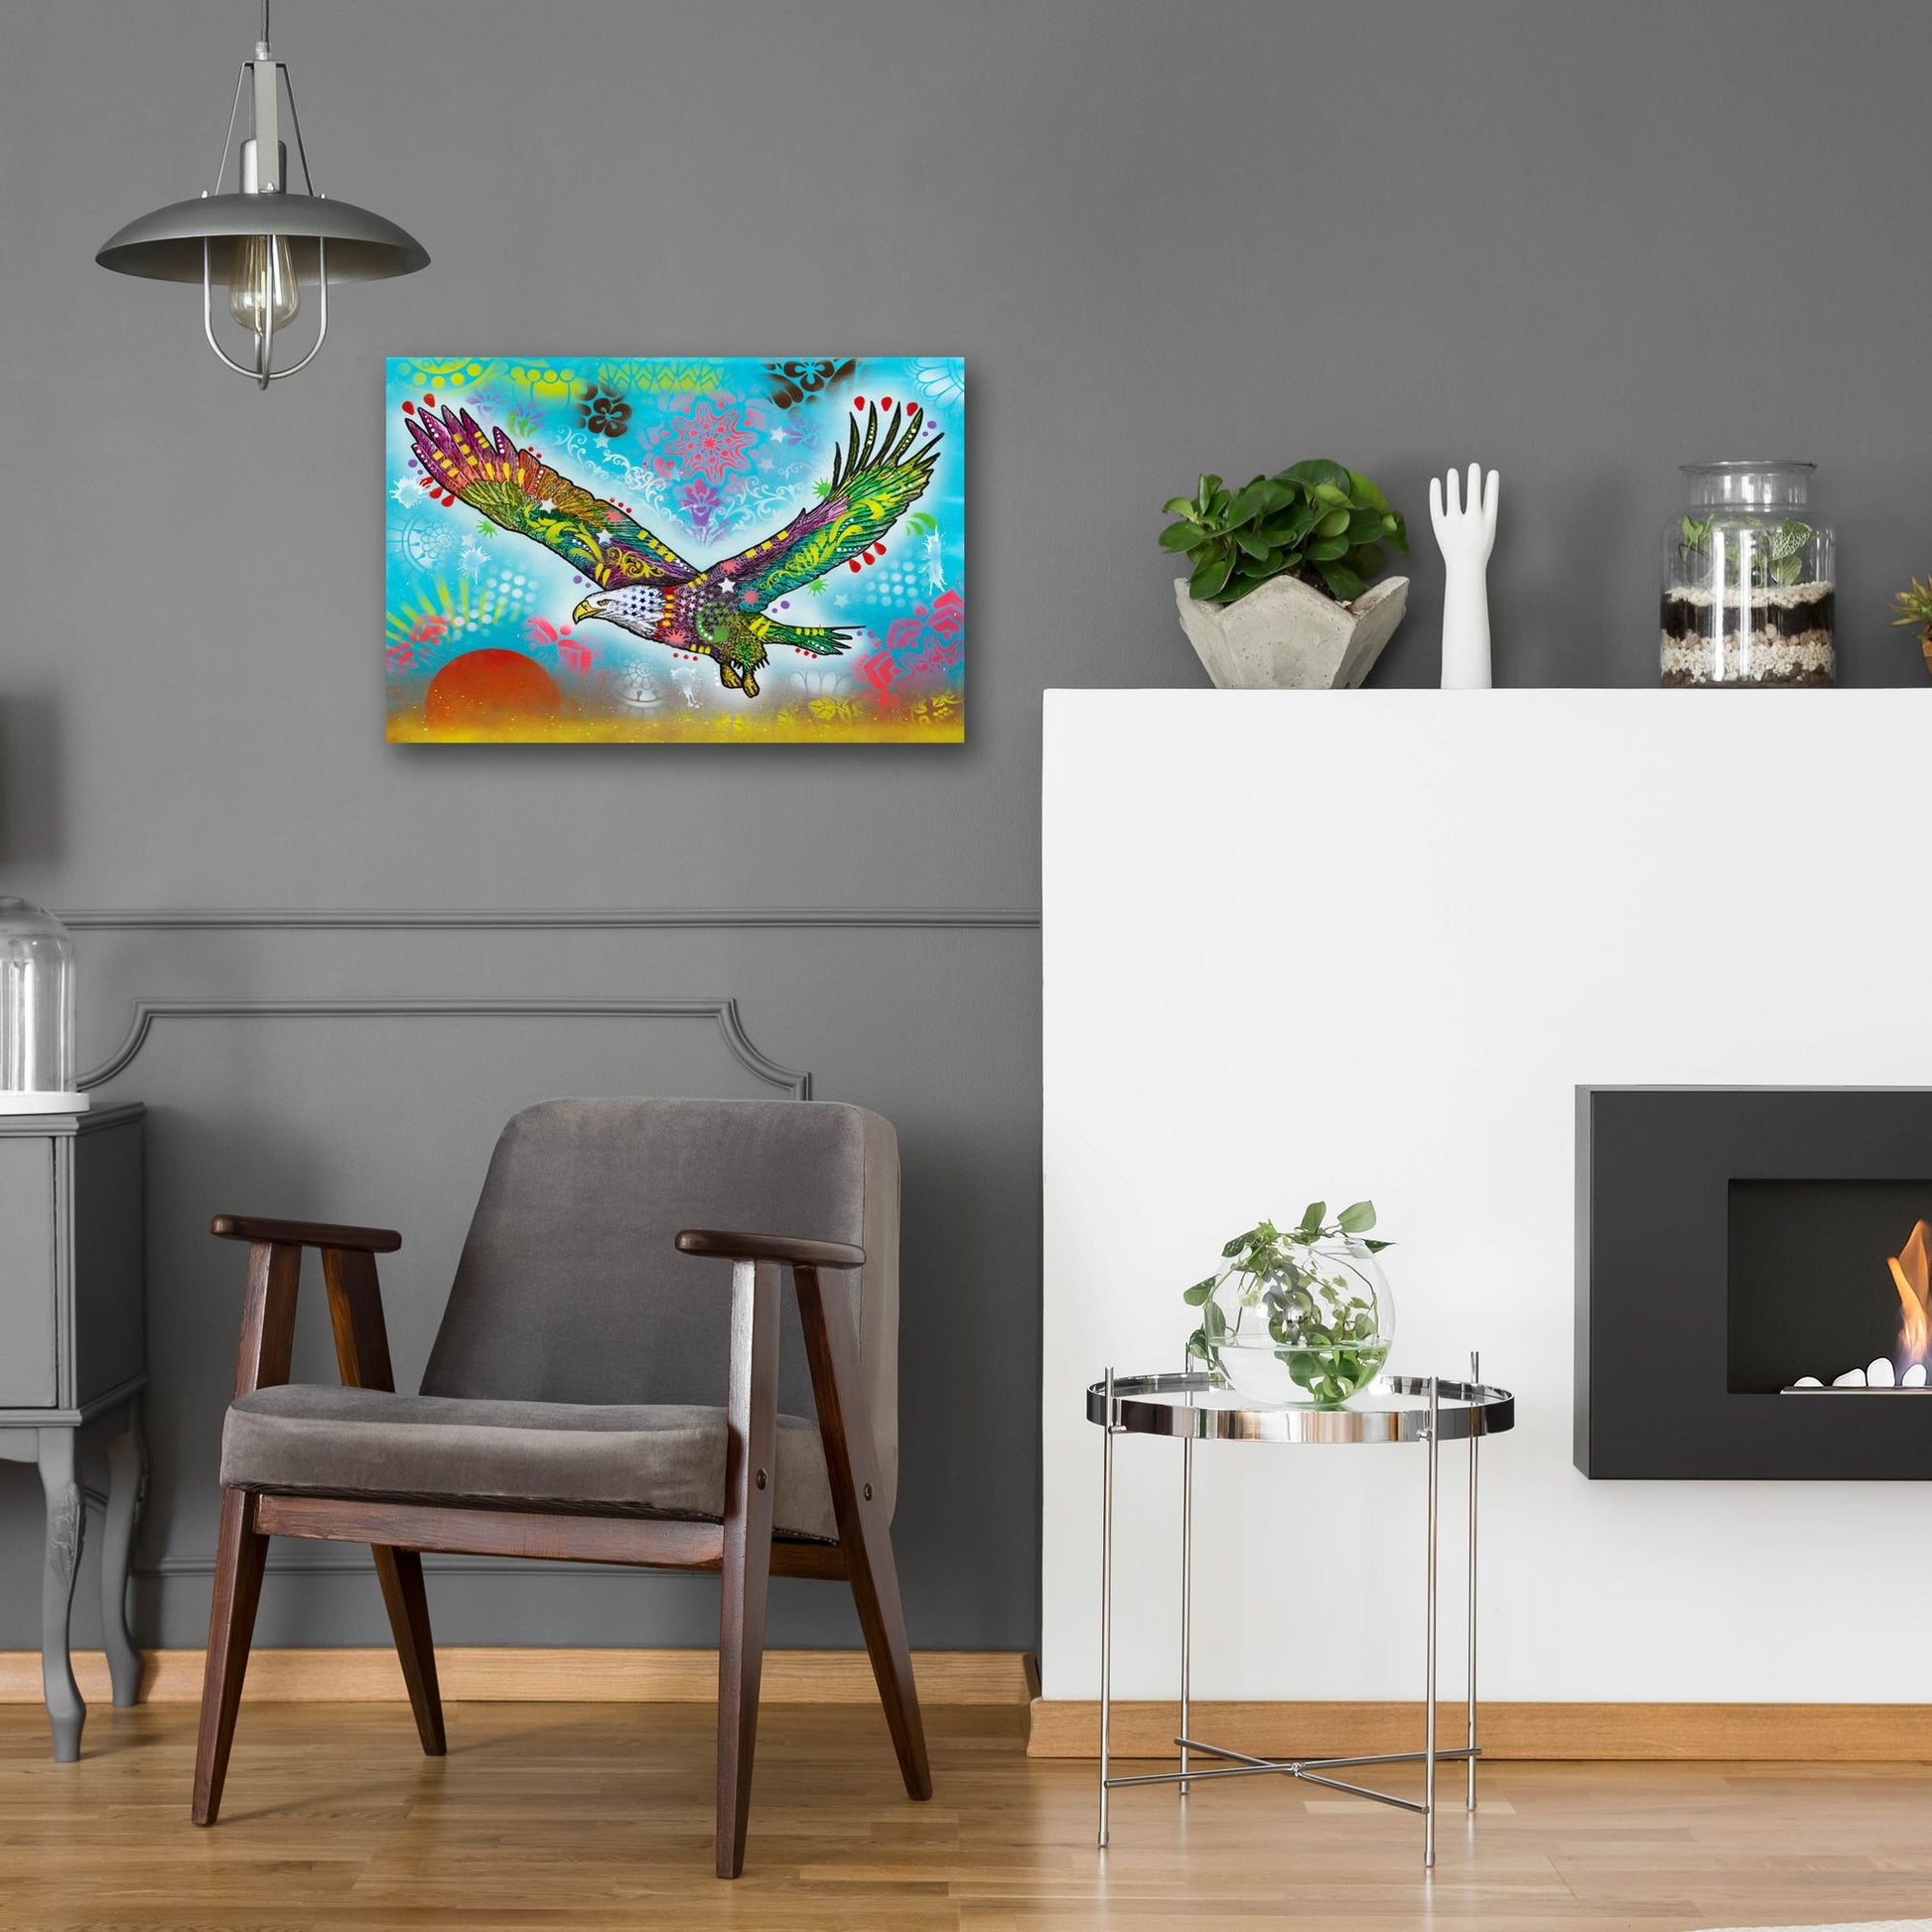 Epic Art 'In Flight' by Dean Russo, Acrylic Glass Wall Art,24x16